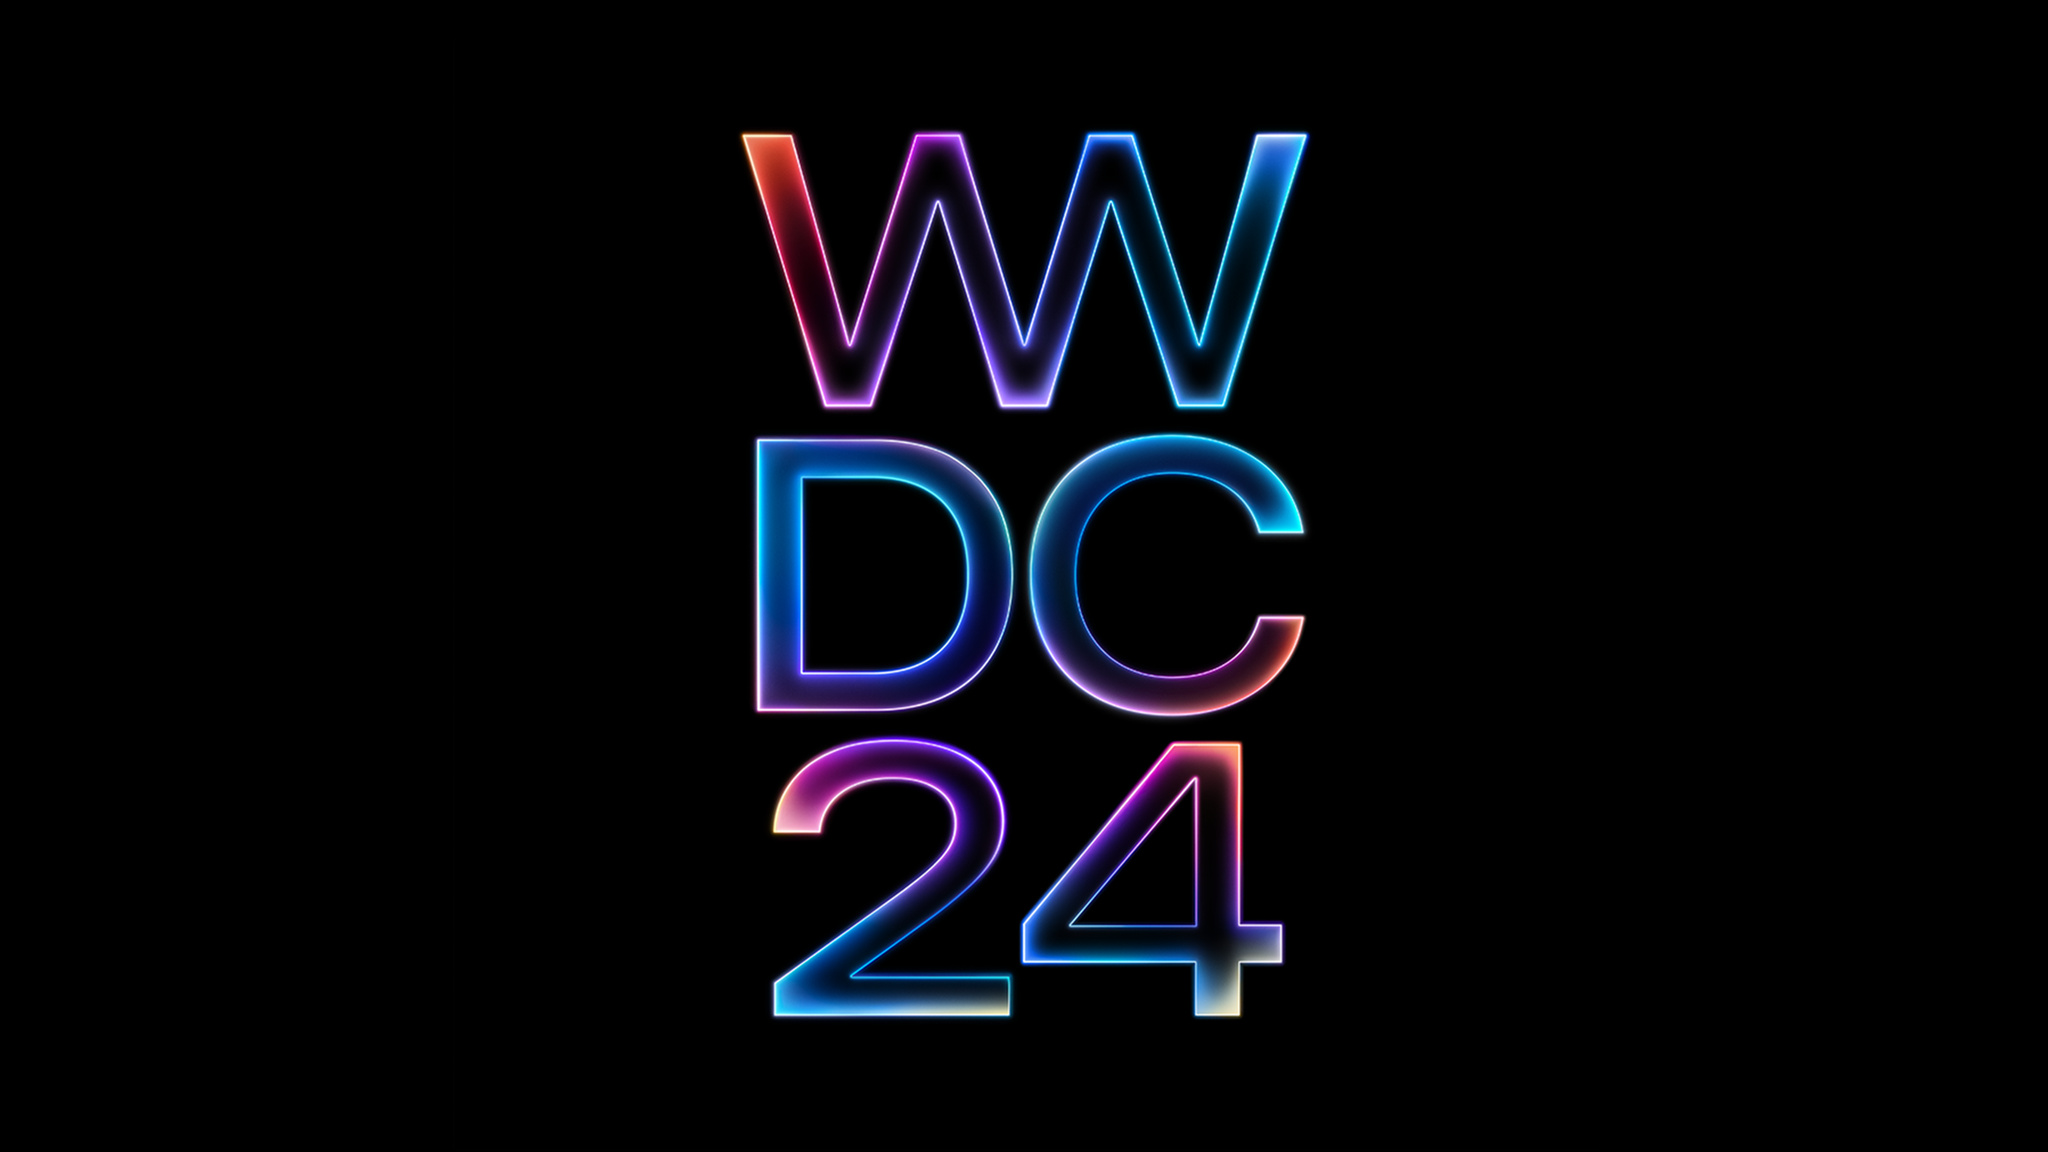 검은색 배경에 빨간색, 보라색, 파란색의 빛나는 그라디언트 효과가 적용된 ‘WWDC24’가 표시되어 있습니다.